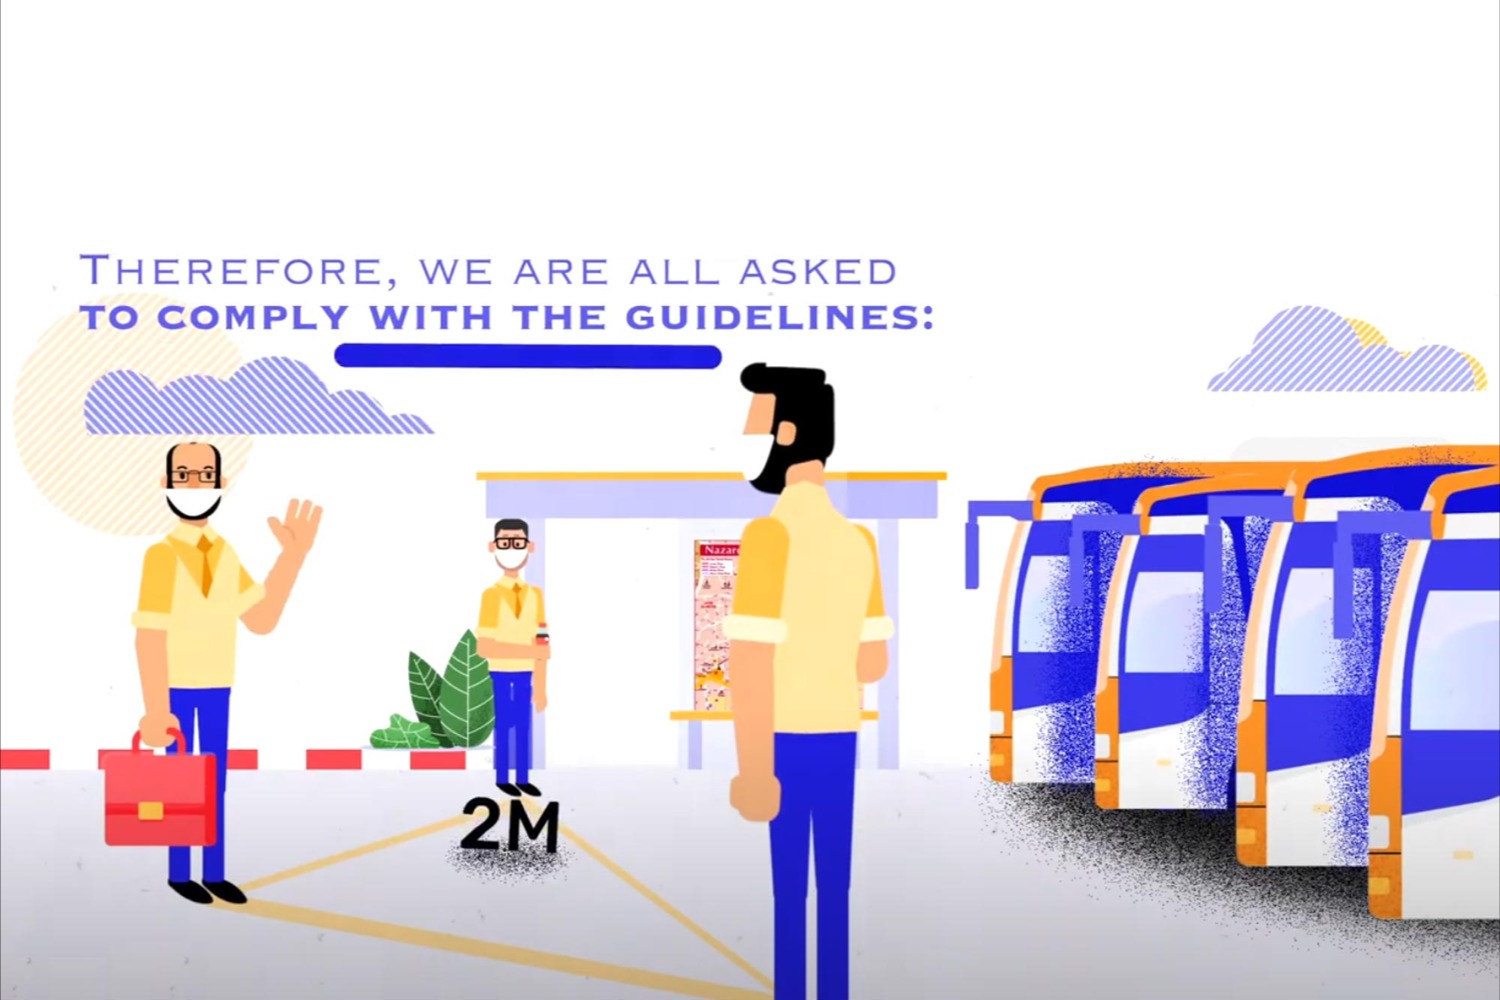 קבוצת עפיפי נרתמת למאמץ הלאומי לבלימת מגפת הקורונה עם סרטון להעלאת מודעות הנוסעים לבטיחות בשגרת הקורונה